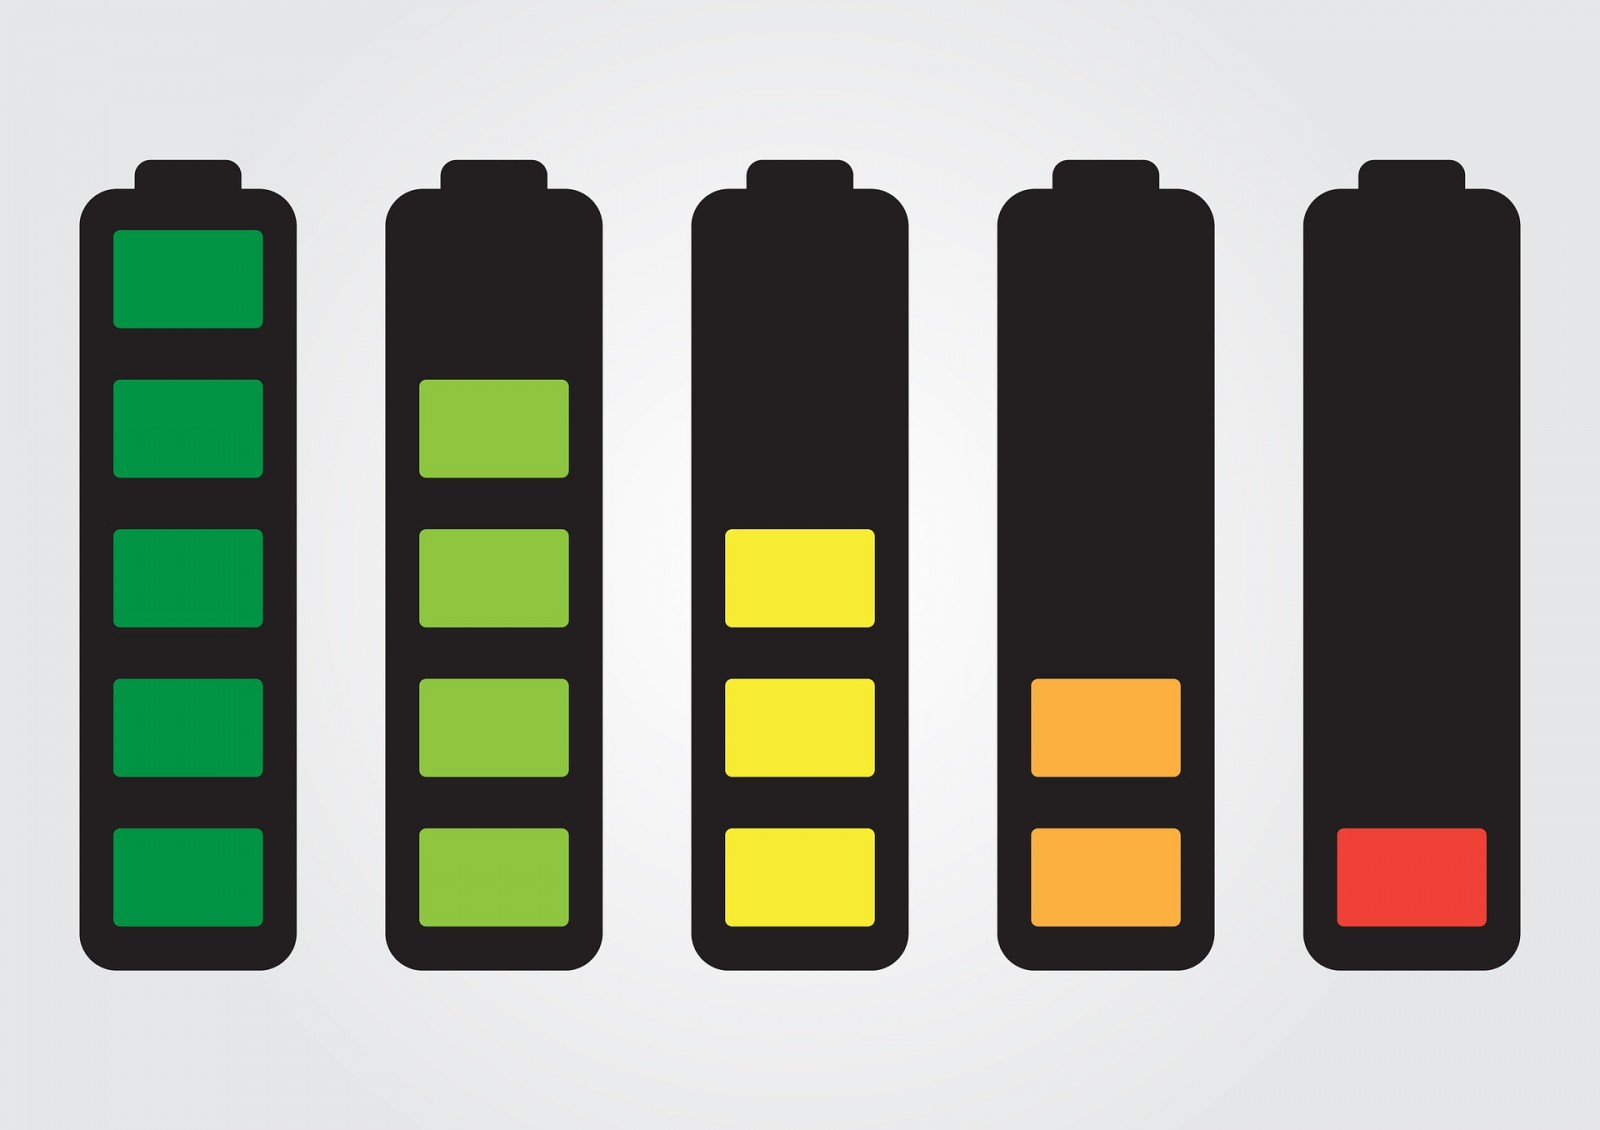 Batterie per repliche ASG da Softair: tutto ciò che c'è da sapere